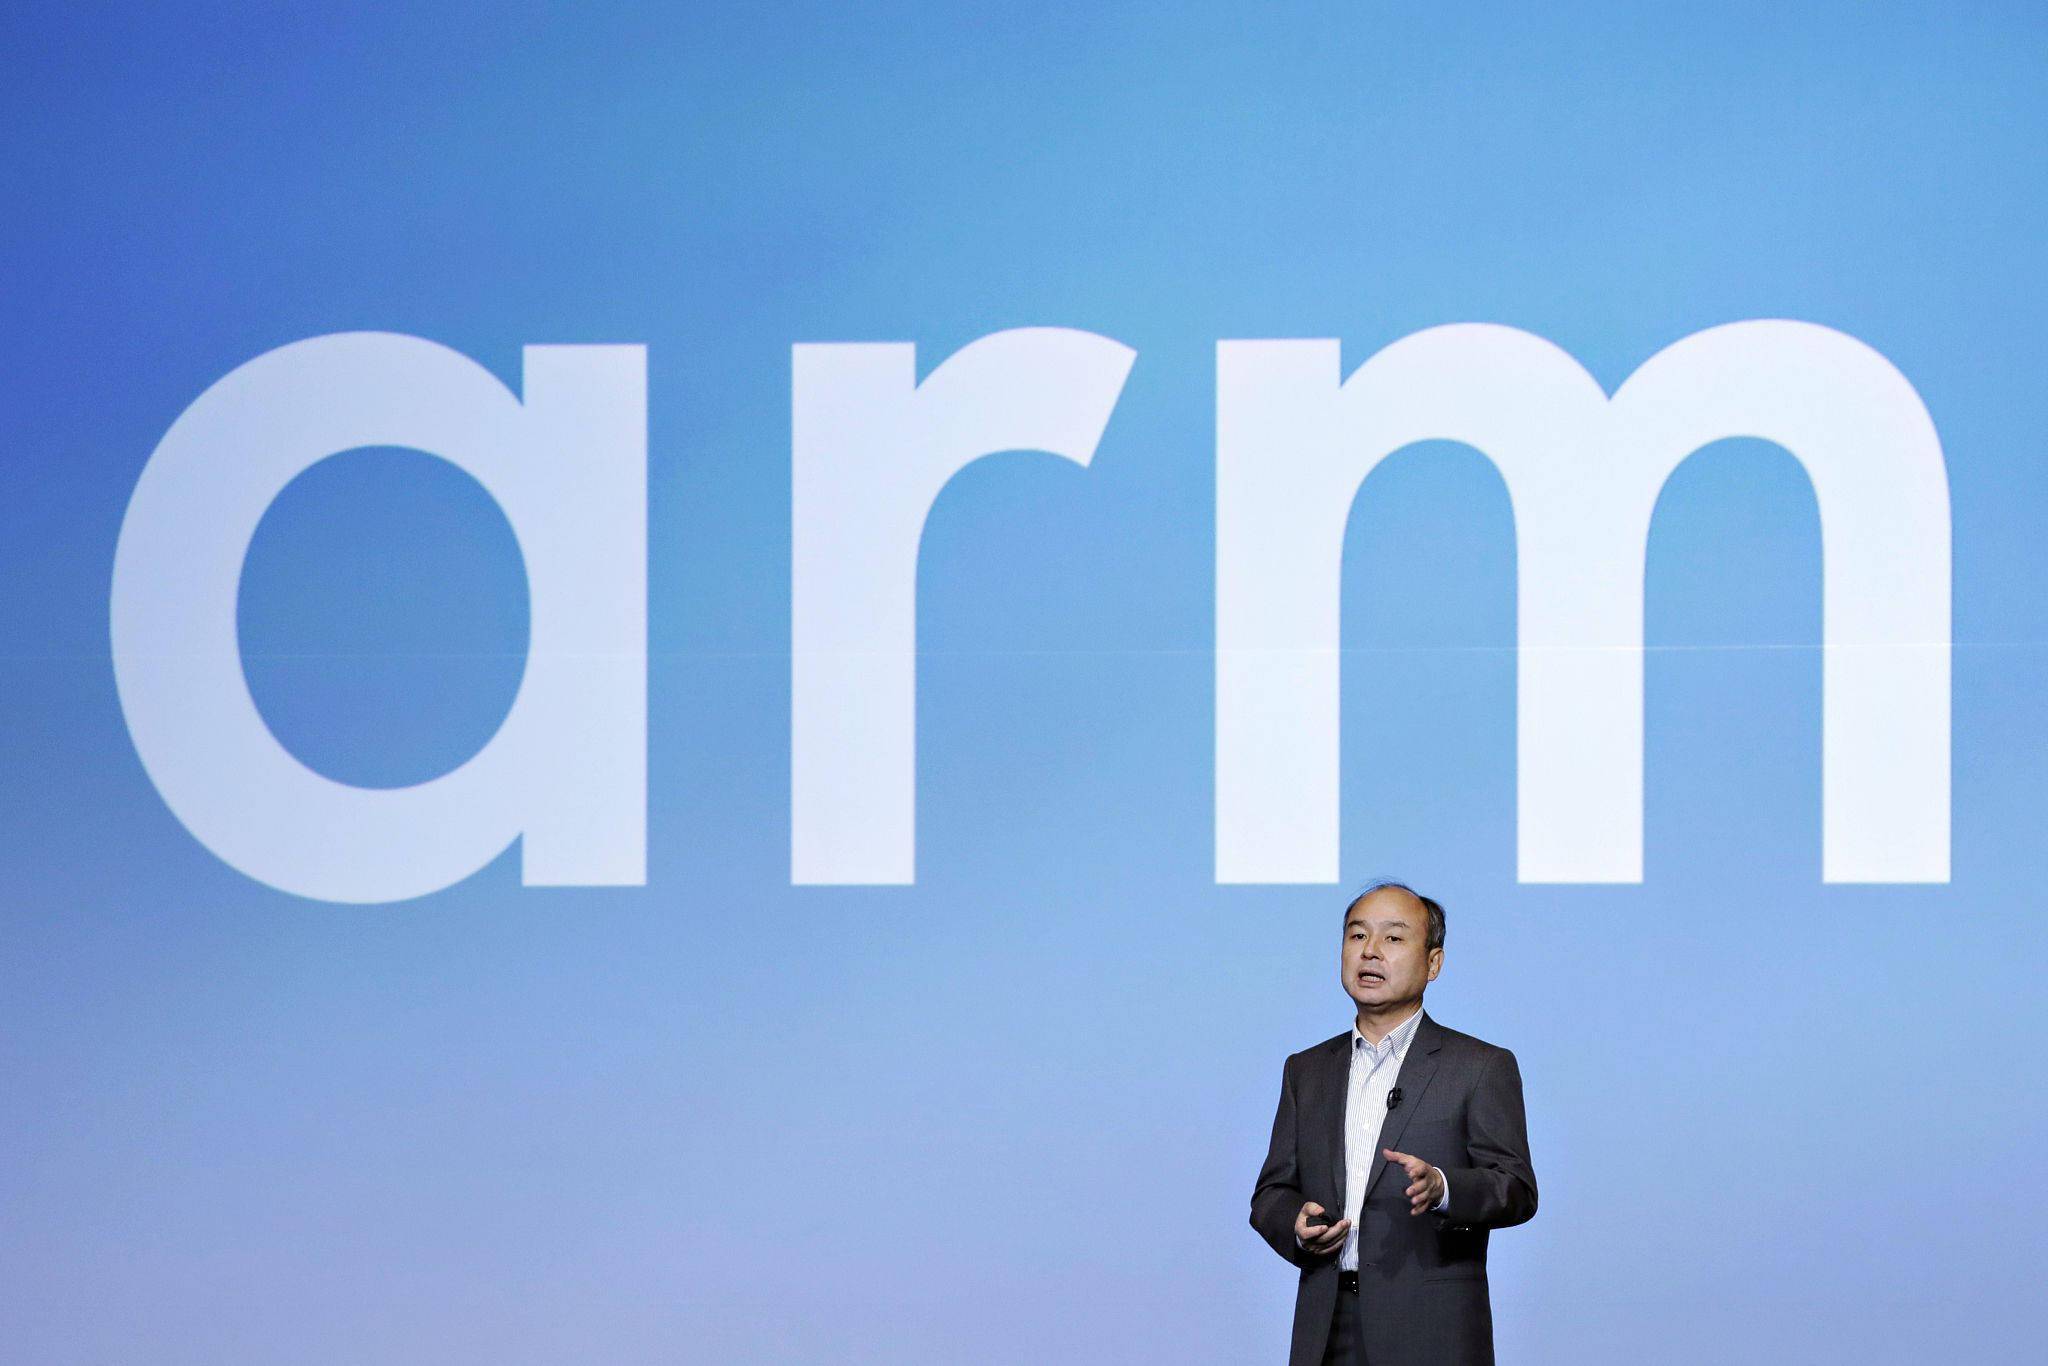 芯片公司 ARM 正在为 IPO 做准备，全球投资机构对 ARM 的估值中值为 500 亿美元，低于其母公司软银集团在去年一直寻求的 600 亿美元估值。